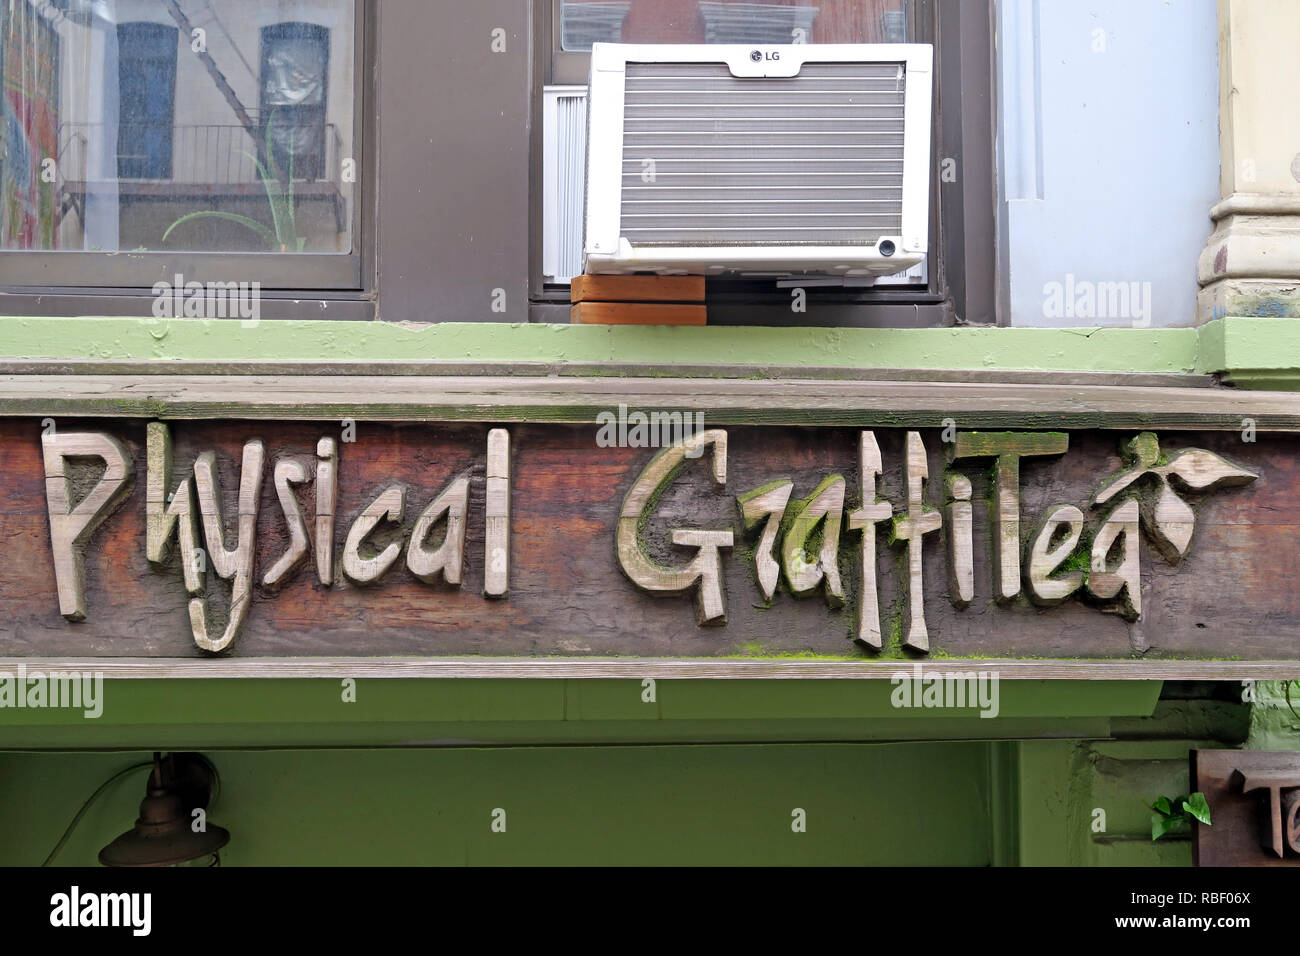 Graffitea physique Physical Graffiti ( ) après l'album de Led Zeppelin, cafe, 96 Pl St Marks, New York, NY 10009, USA Banque D'Images